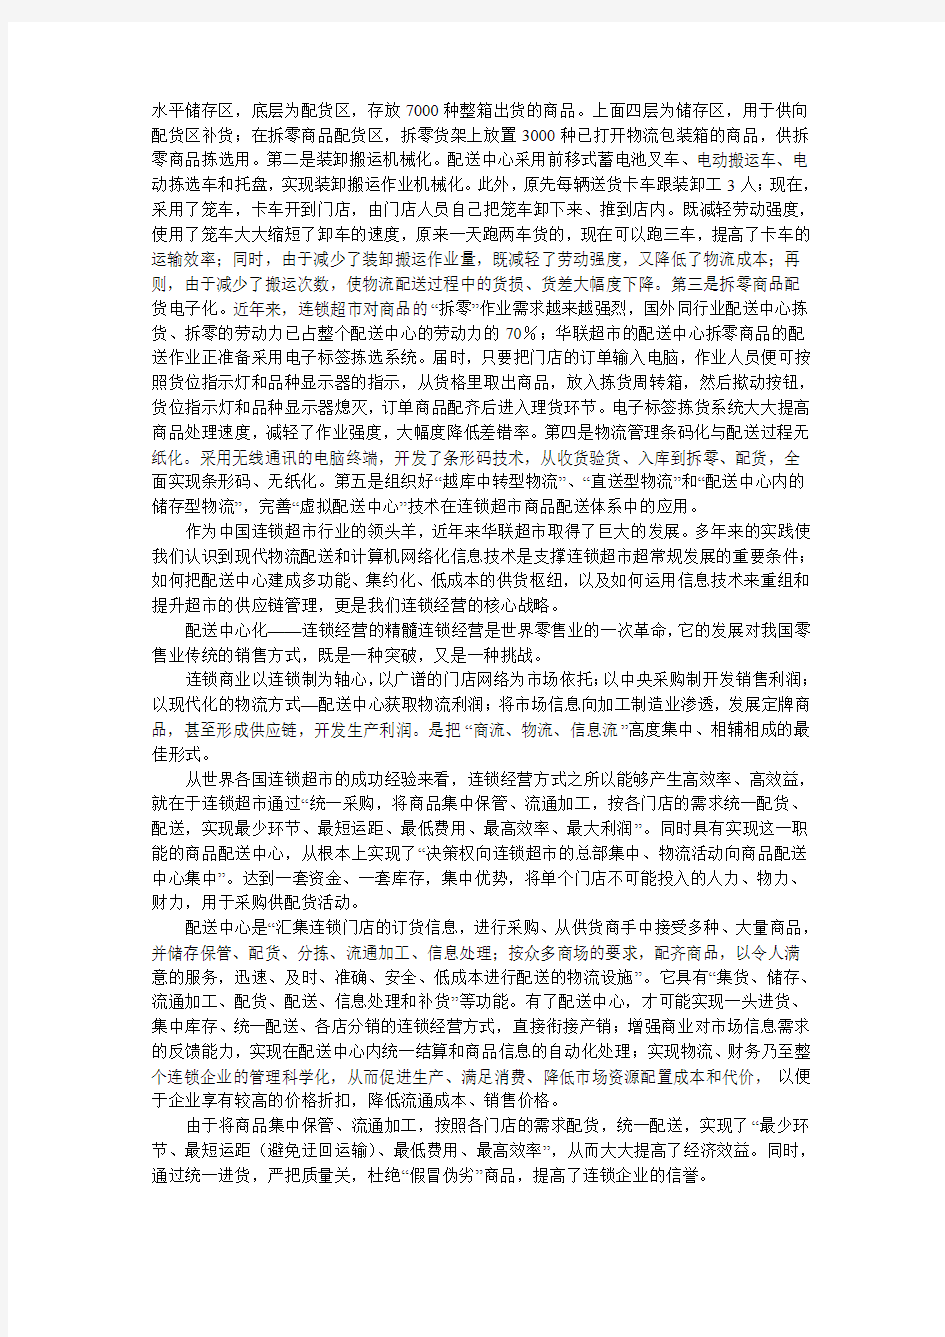 电子课件 《物流管理》刘斌 案例7 华联配送连锁经营的供货枢纽